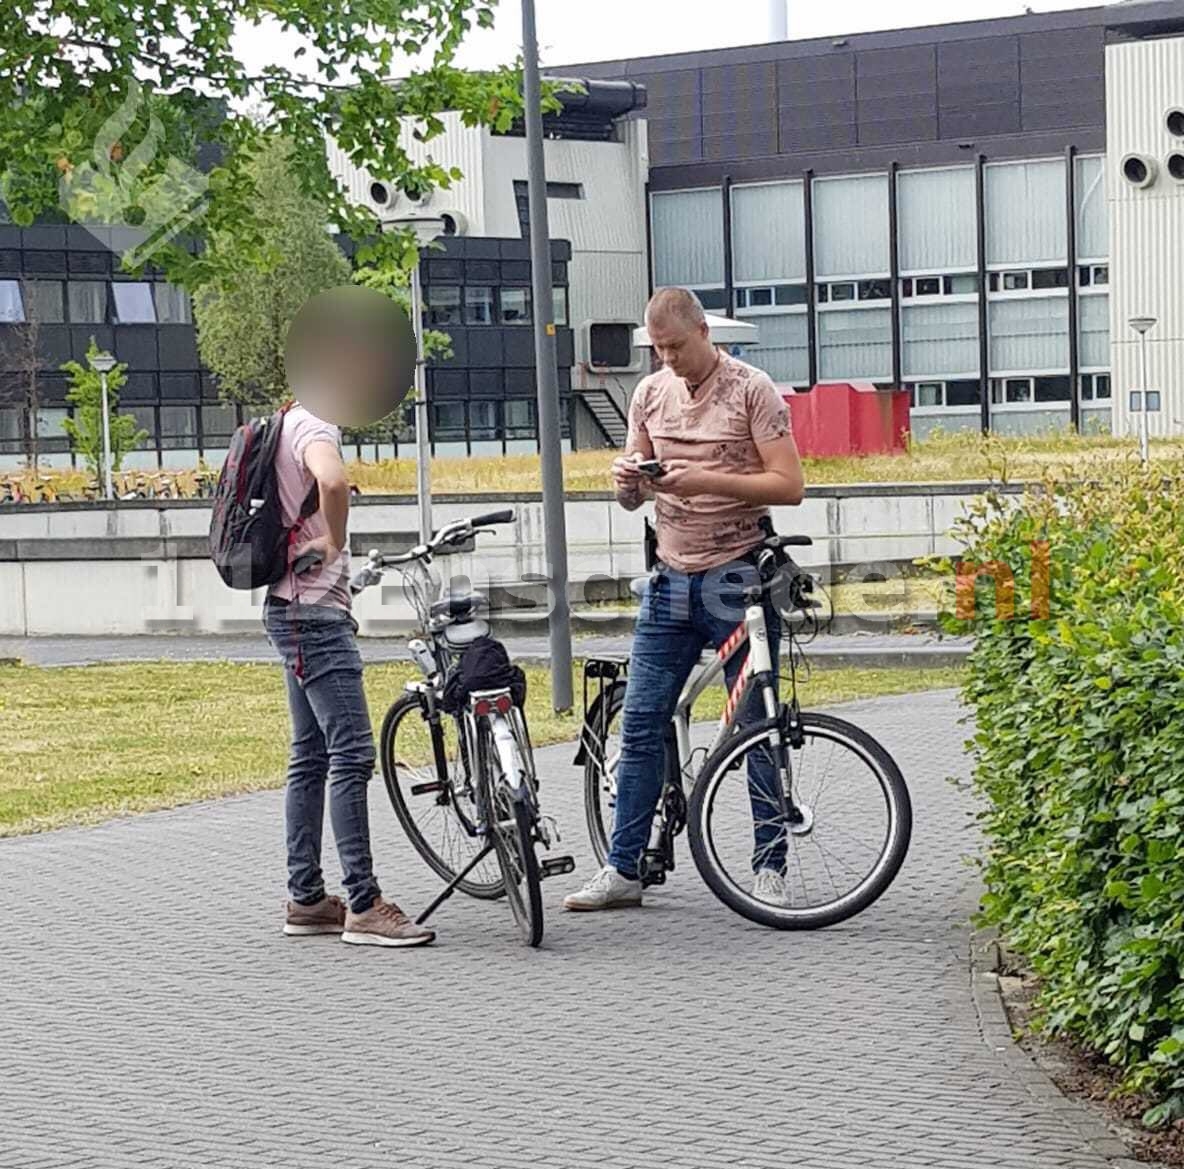 Meerdere bekeuringen in Enschede voor vasthouden telefoon op fiets